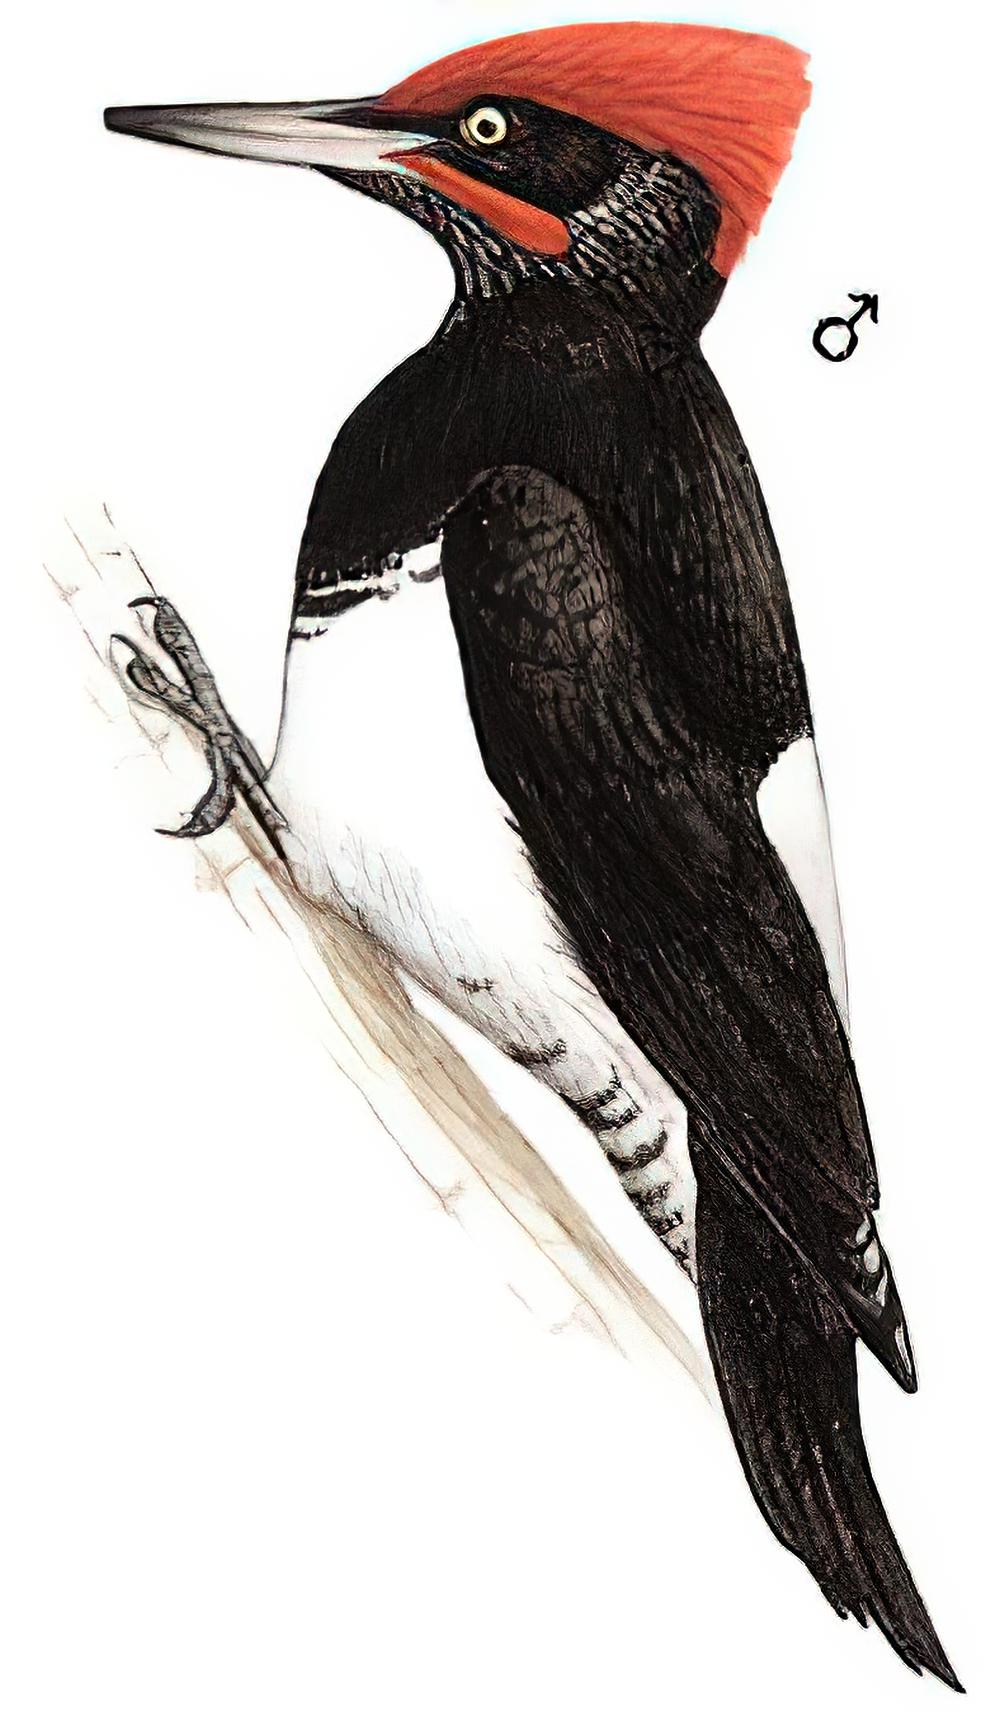 白腹黑啄木鸟 / White-bellied Woodpecker / Dryocopus javensis